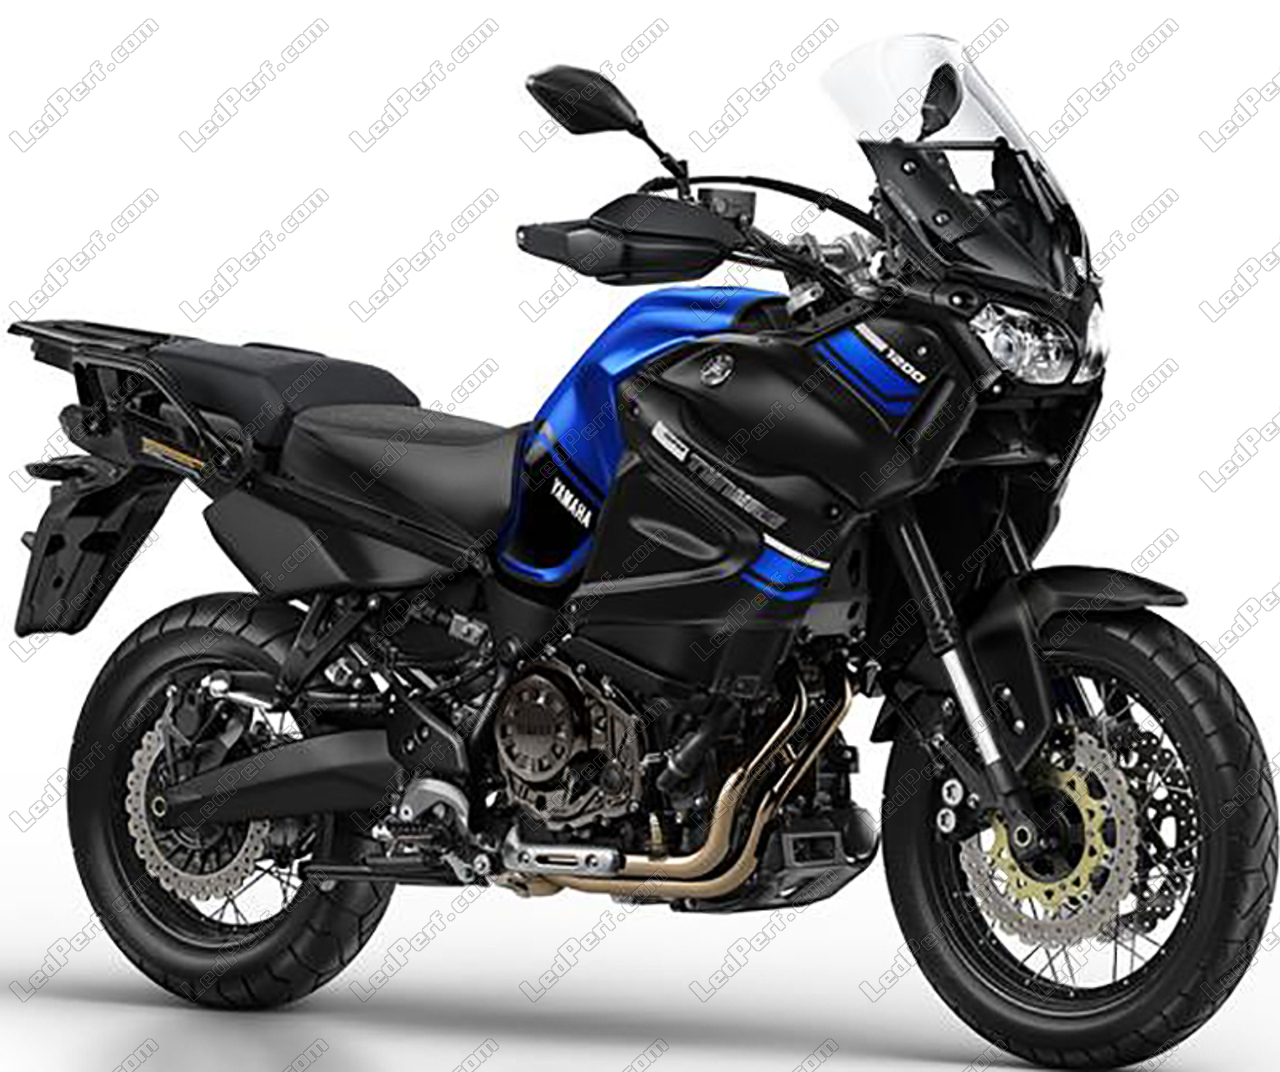 Moto del día: Yamaha XT 1200 Z Super Ténéré | espíritu 